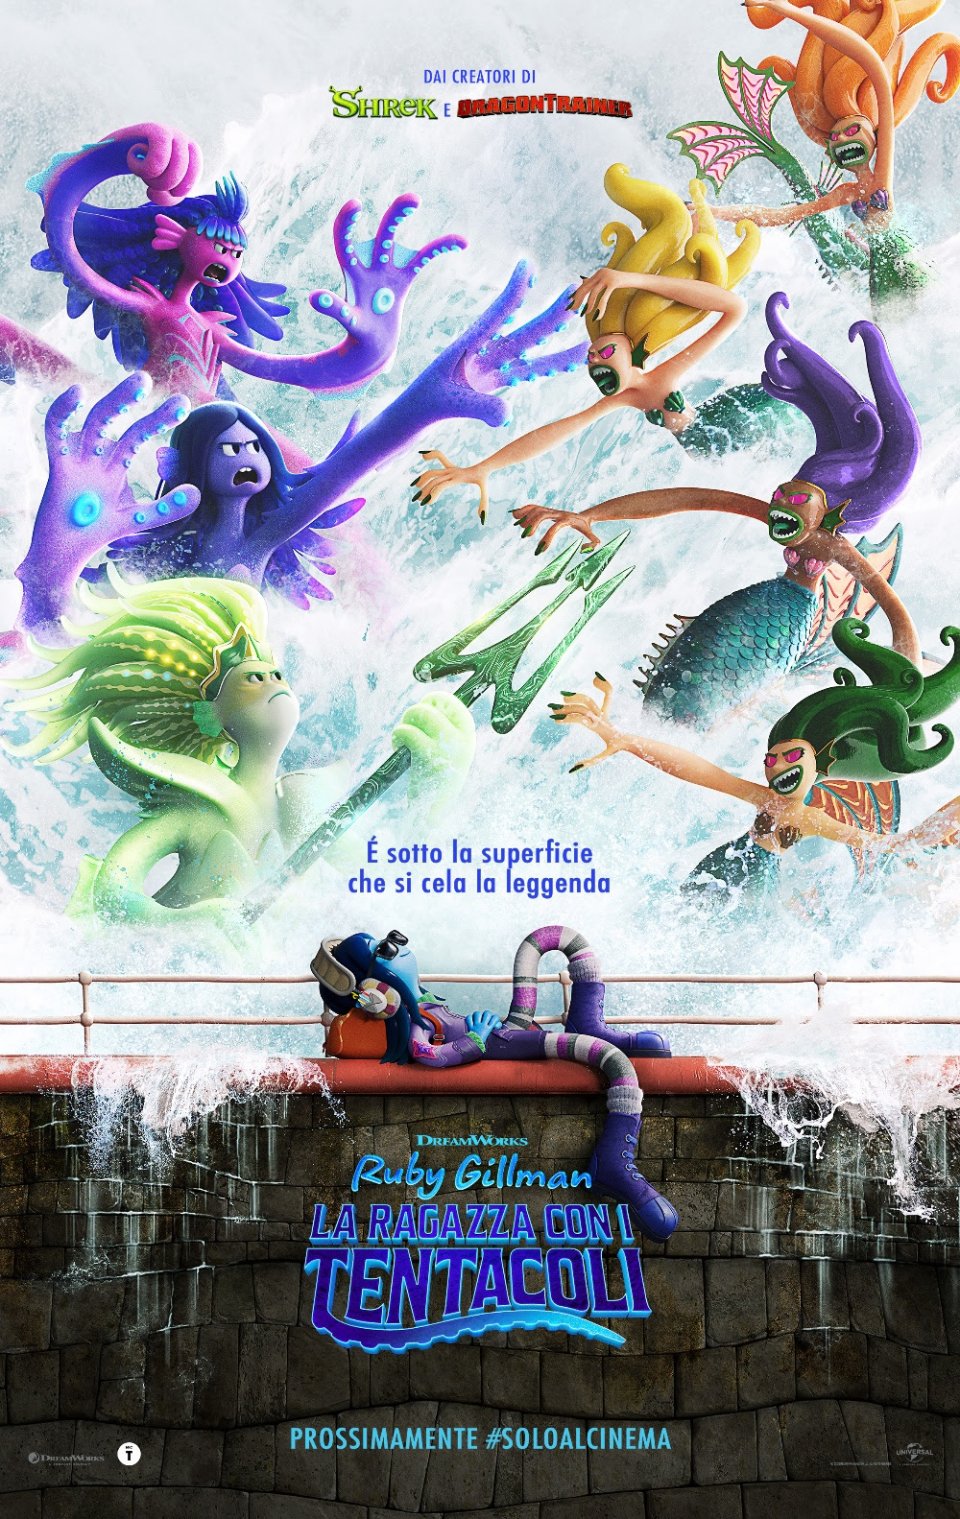 Ruby Gillman, la ragazza con i tentacoli: il trailer del nuovo film DreamWorks Animation.